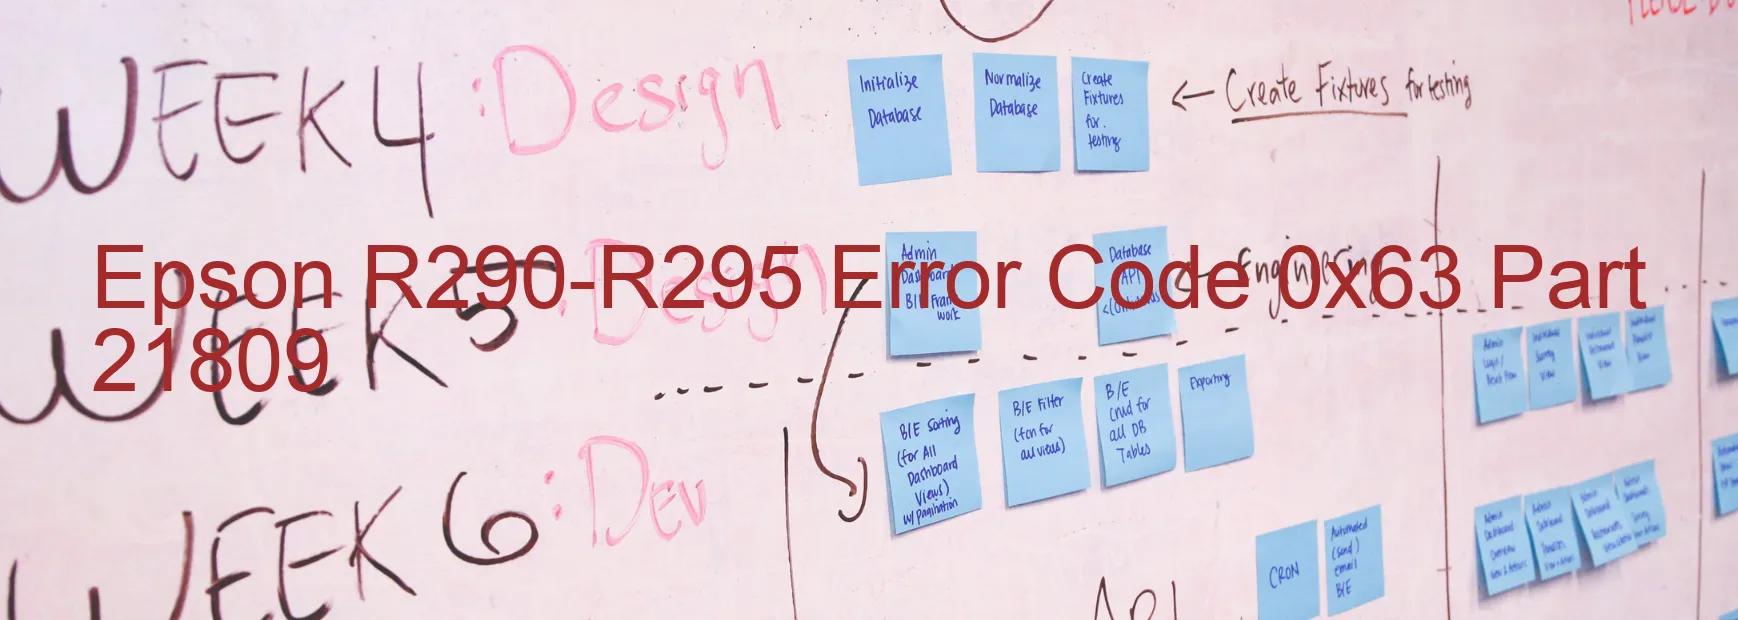 Epson R290-R295 Error 0x63